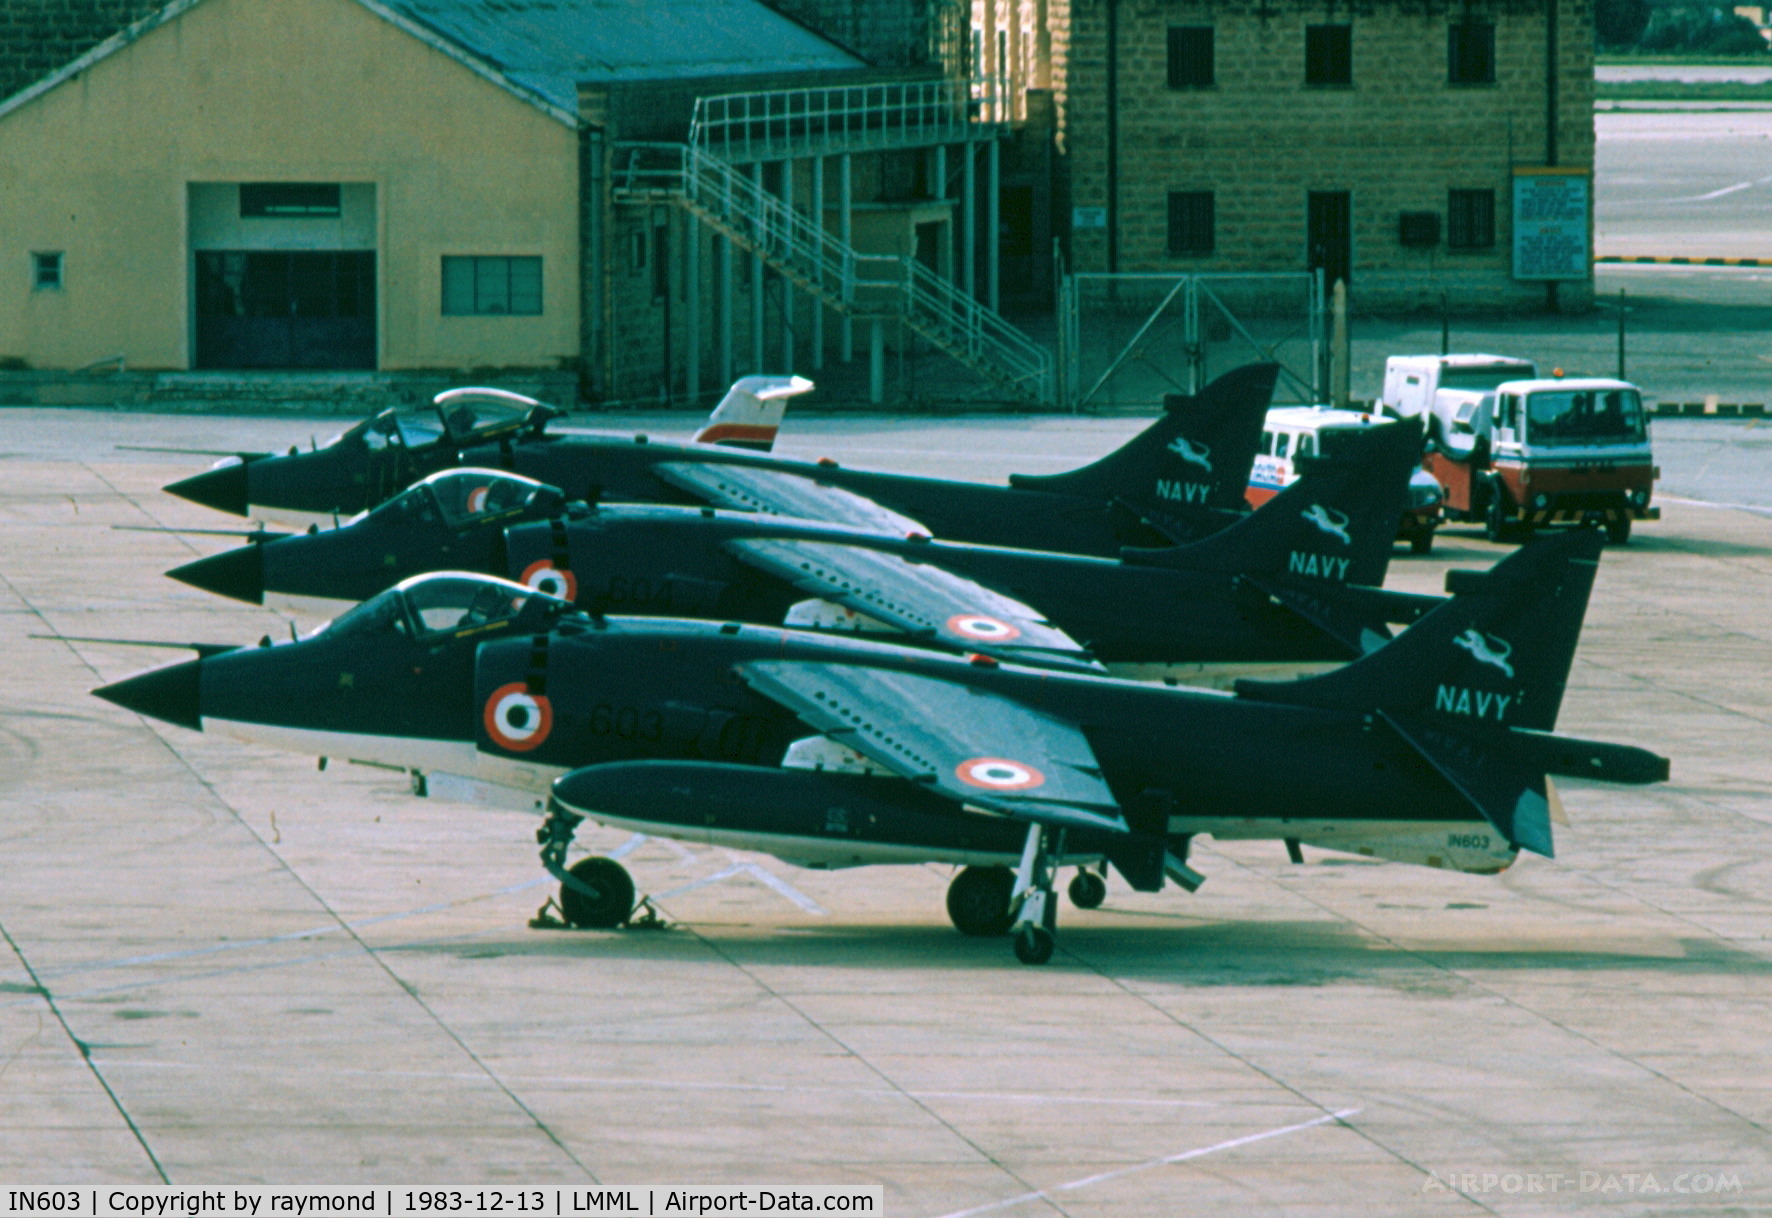 IN603, 1983 British Aerospace Sea Harrier FRS.51 C/N 603, Sea Harriers IN603/IN604/IN605 Indian Navy